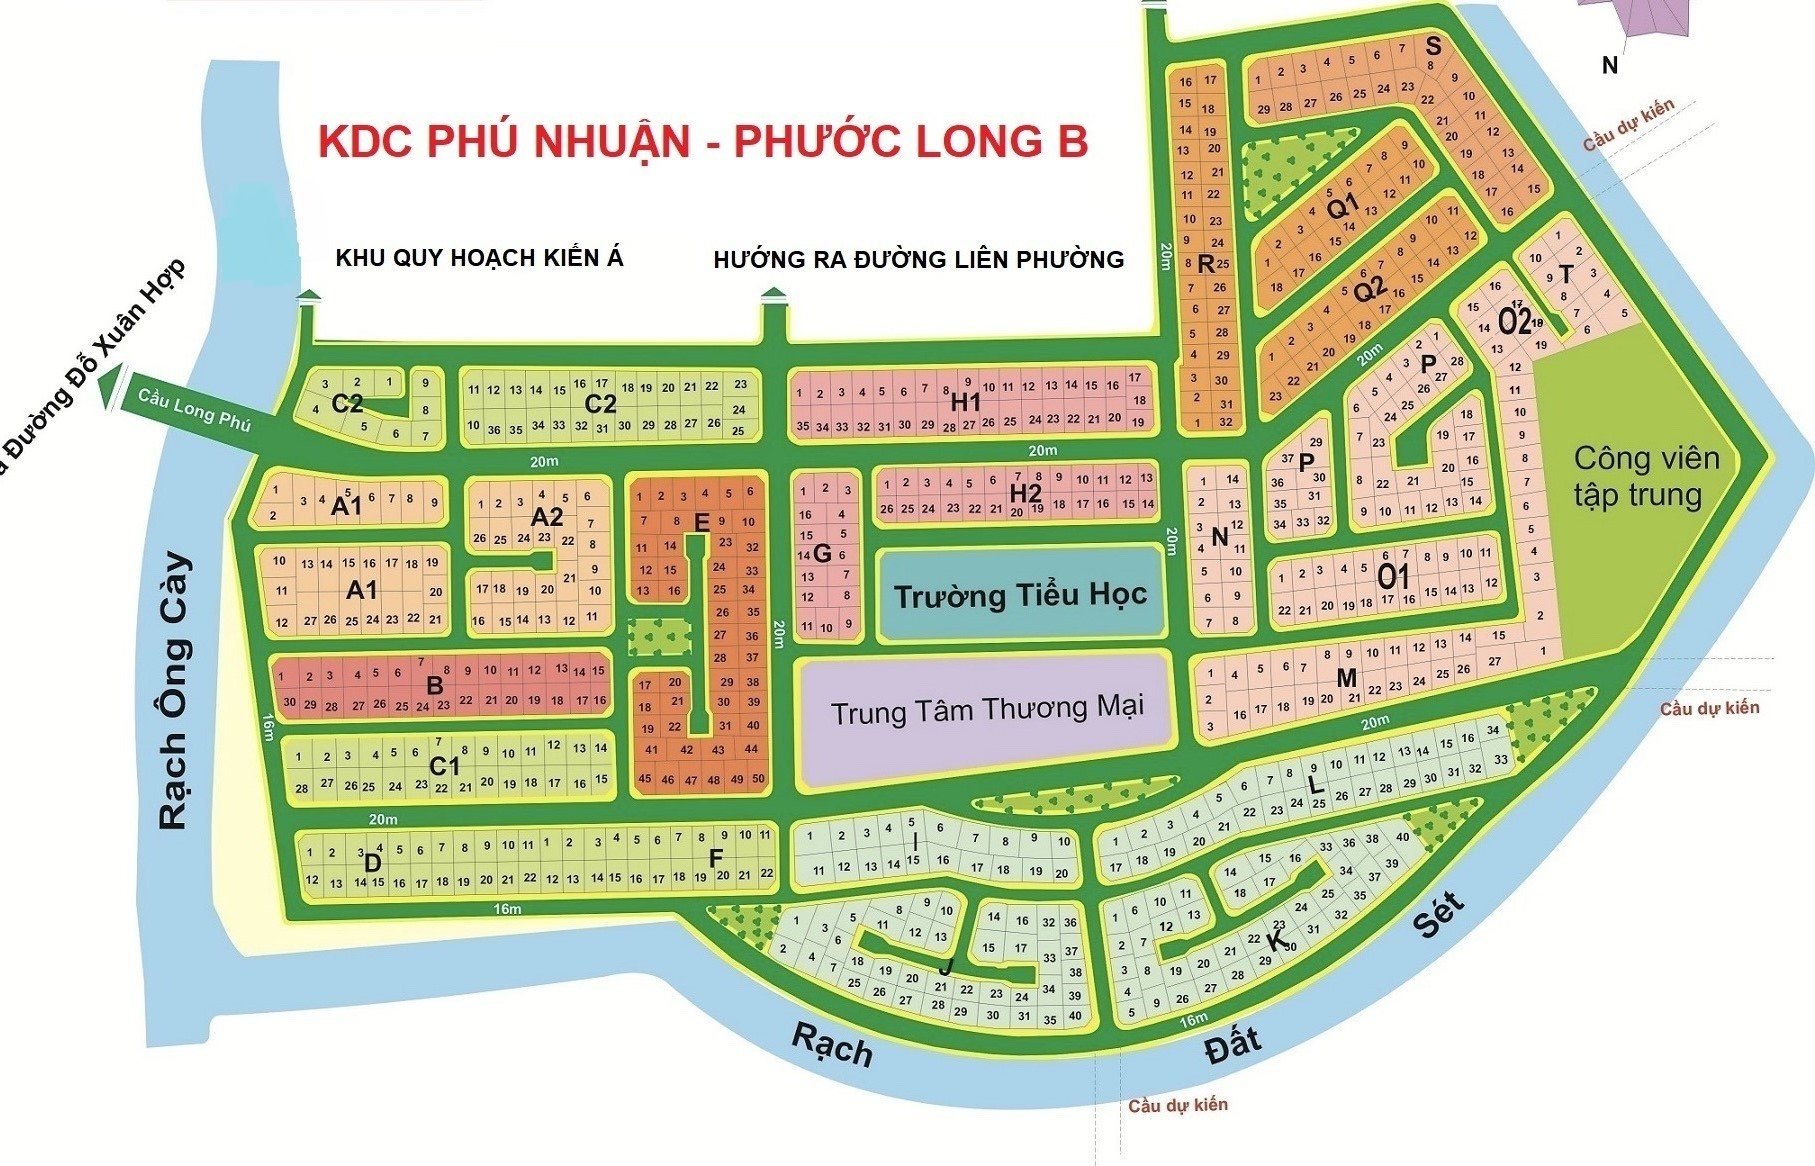 Cần bán nền đất đối diện trung tâm thương mại DT 238m2, KDC Phú Nhuận, PLB, quận 9 6